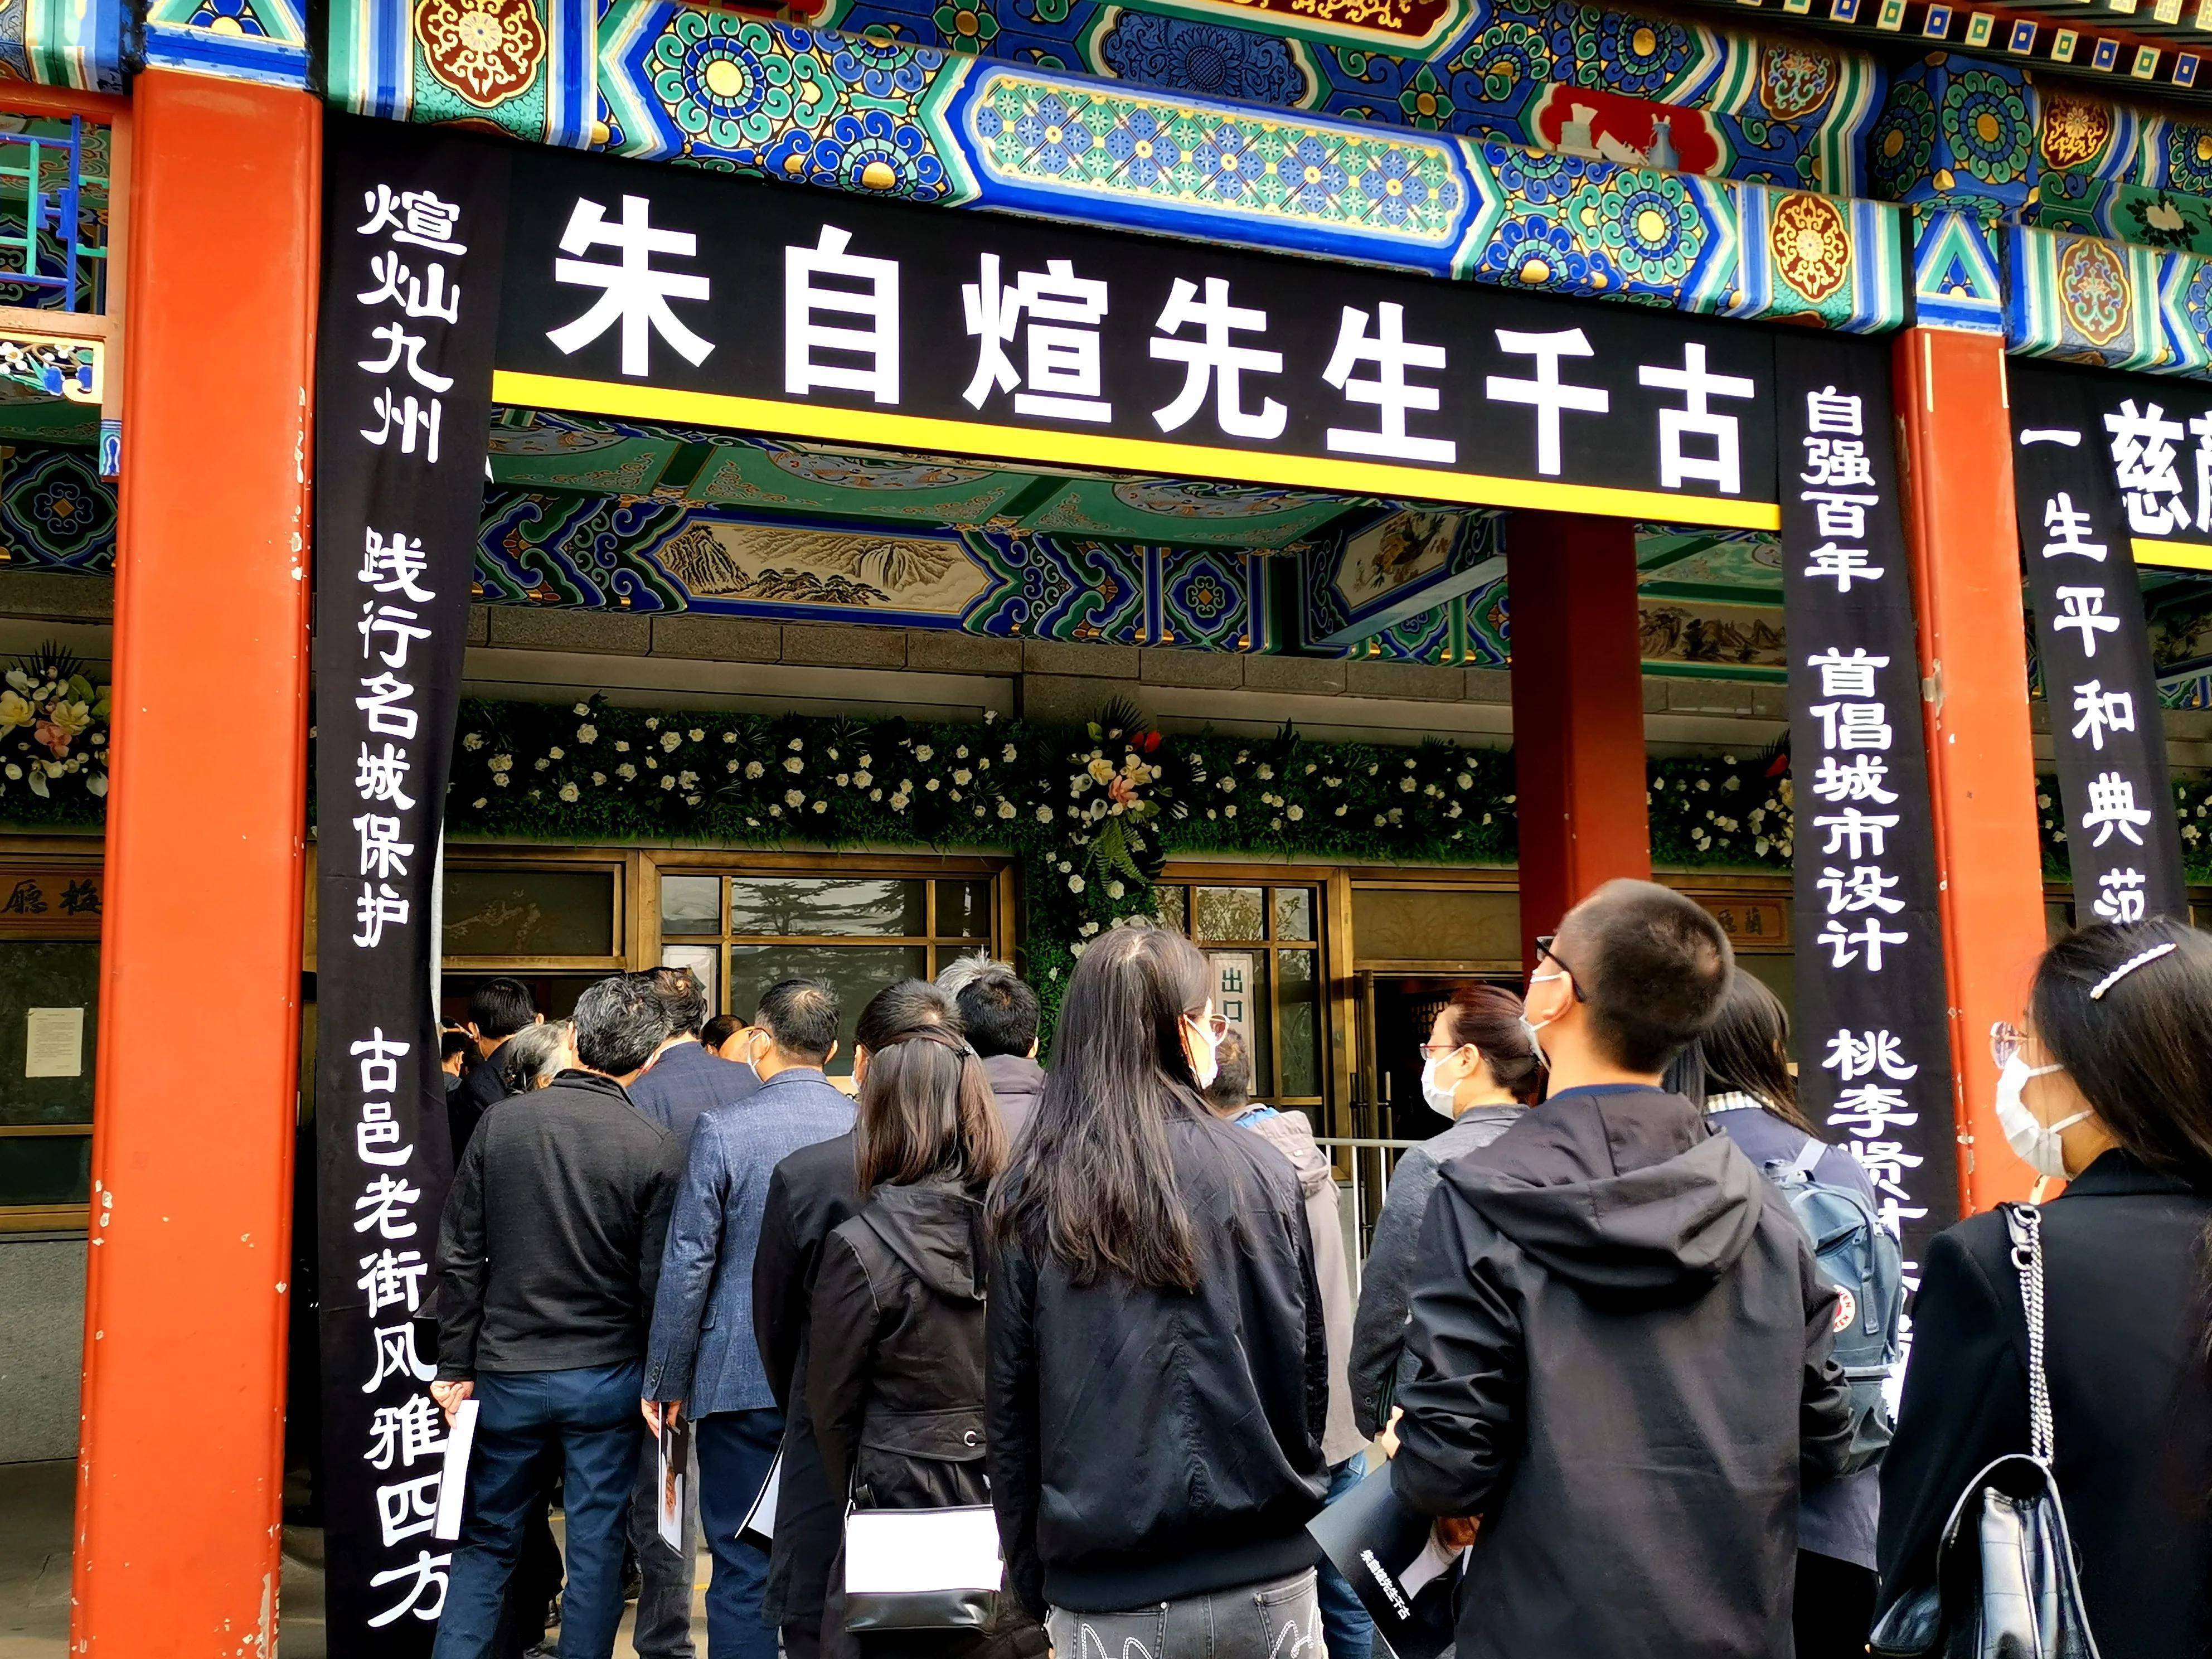 特别报道 朱自煊遗体告别仪式在京举行家乡休宁代表前往送别 保护